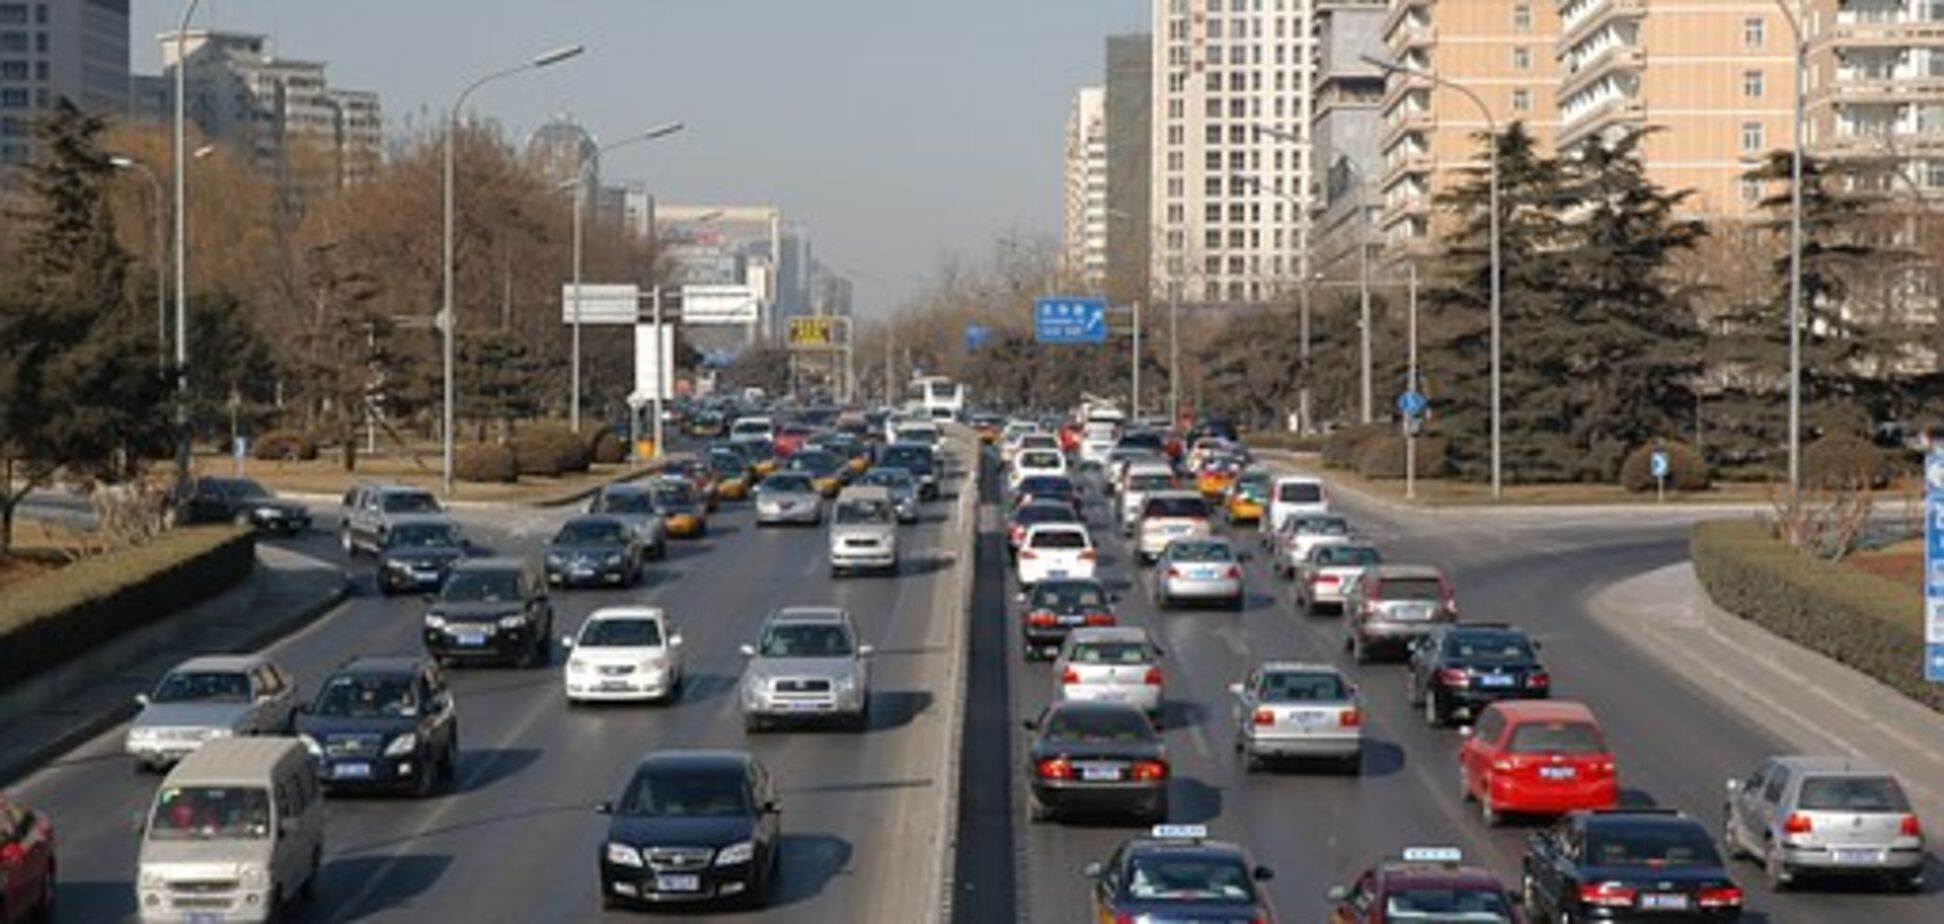 Як ввезти в Україну авто на єврономер